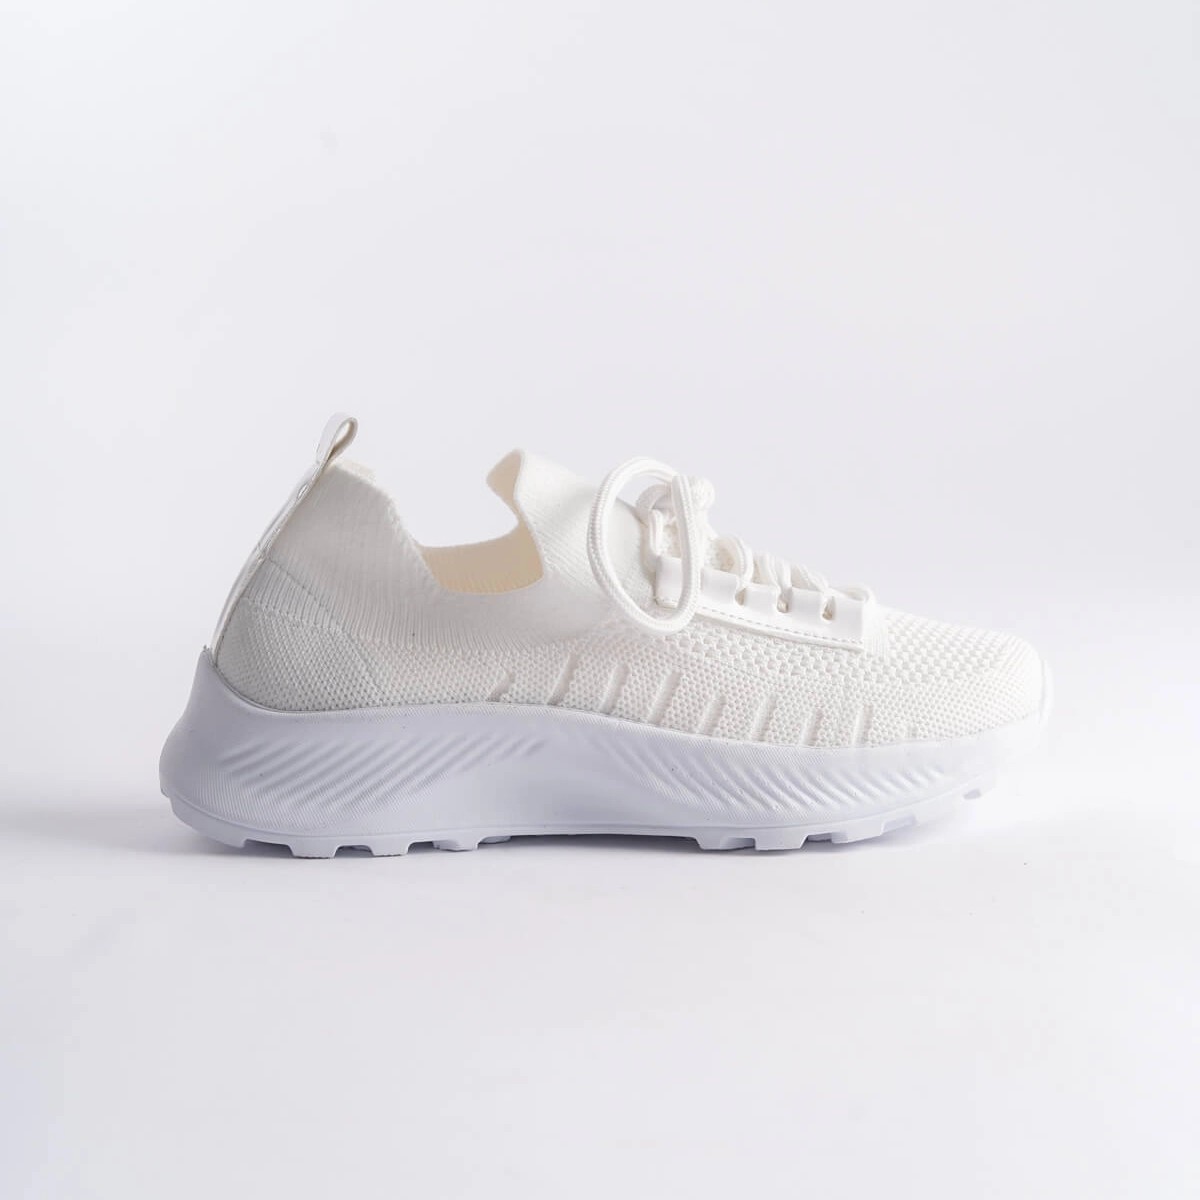 Tekstil Sneaker Spor Ayakkabı - Beyaz